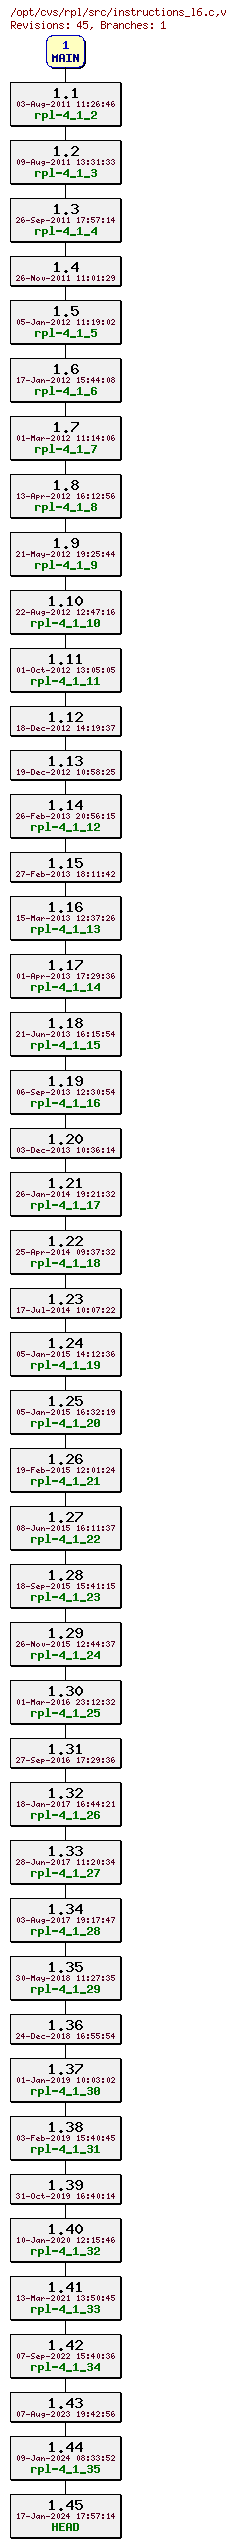 Revision graph of rpl/src/instructions_l6.c